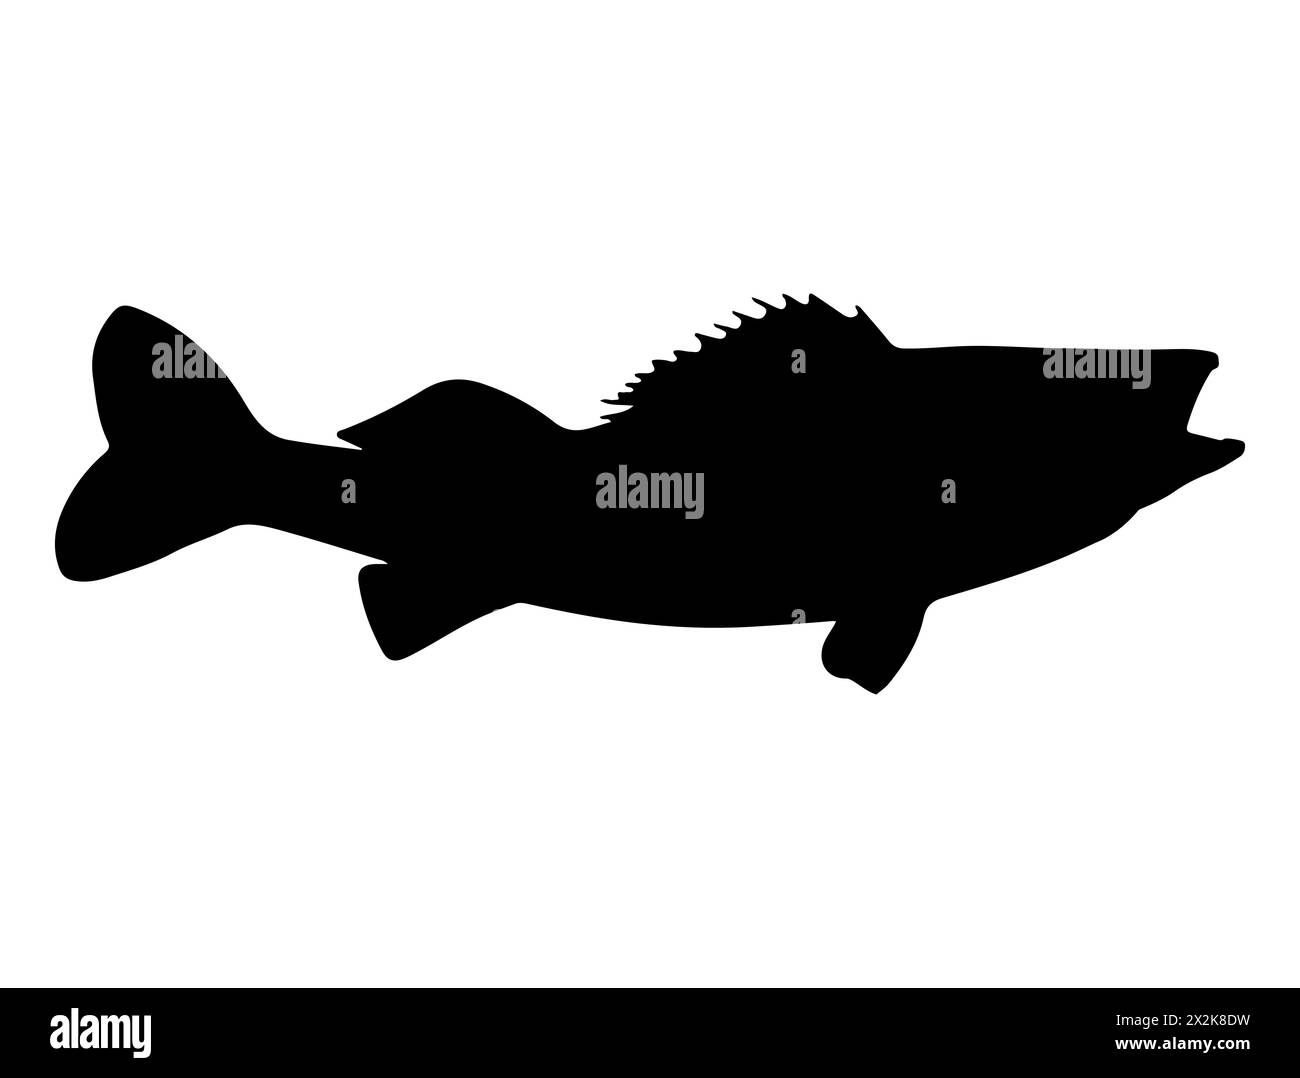 Walleye fish silhouette vector art Stock Vector